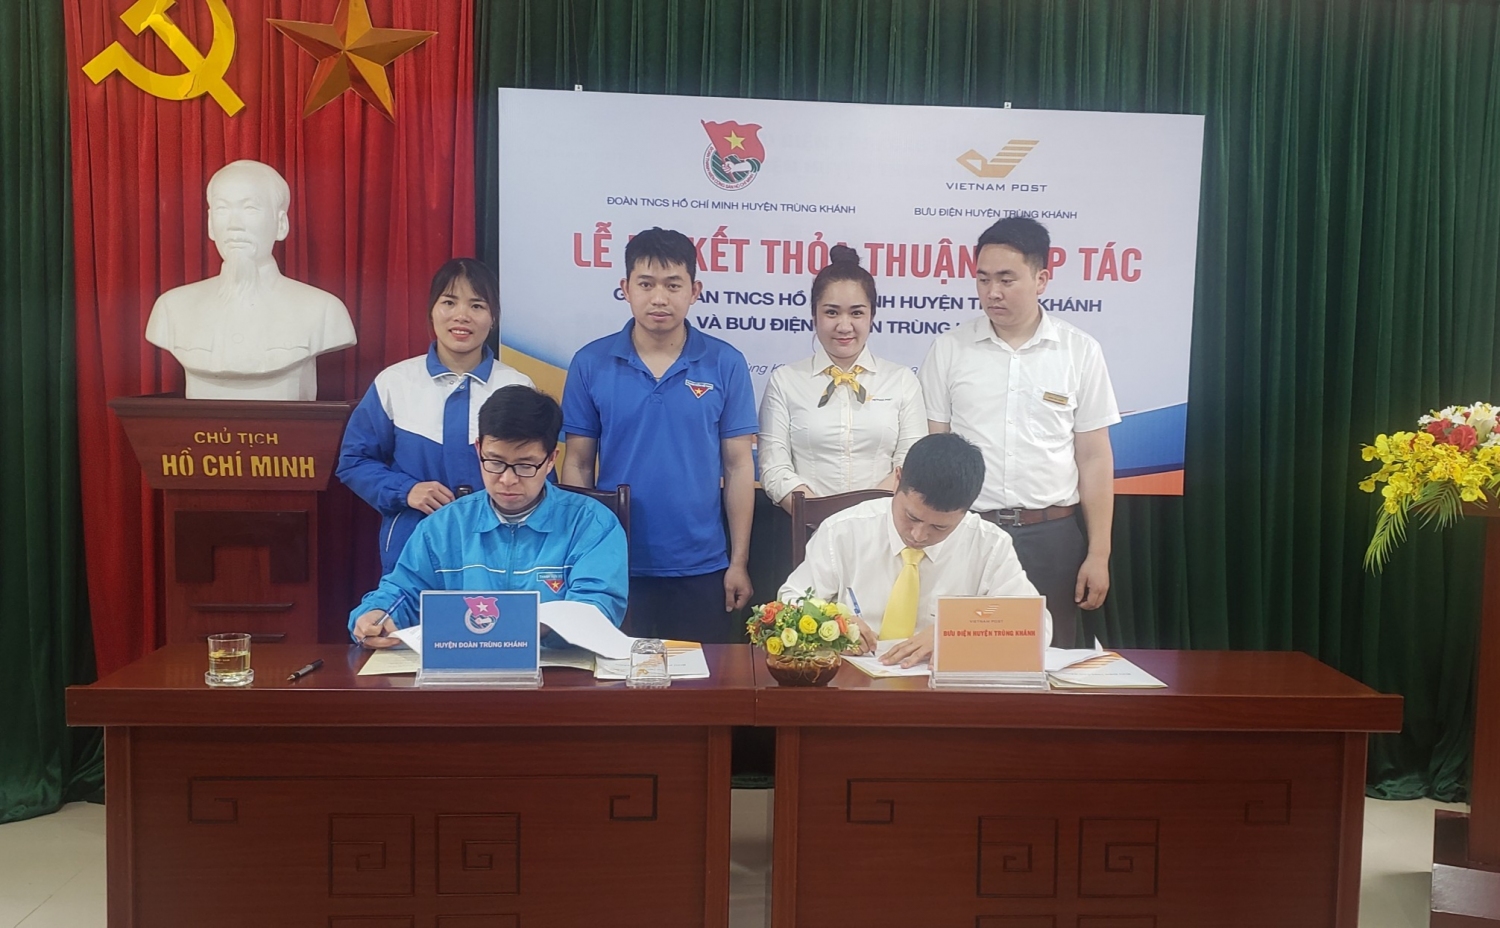 Huyện Đoàn Trùng Khánh và Bưu điện huyện Trùng Khánh ký kết thỏa thuận hợp tác